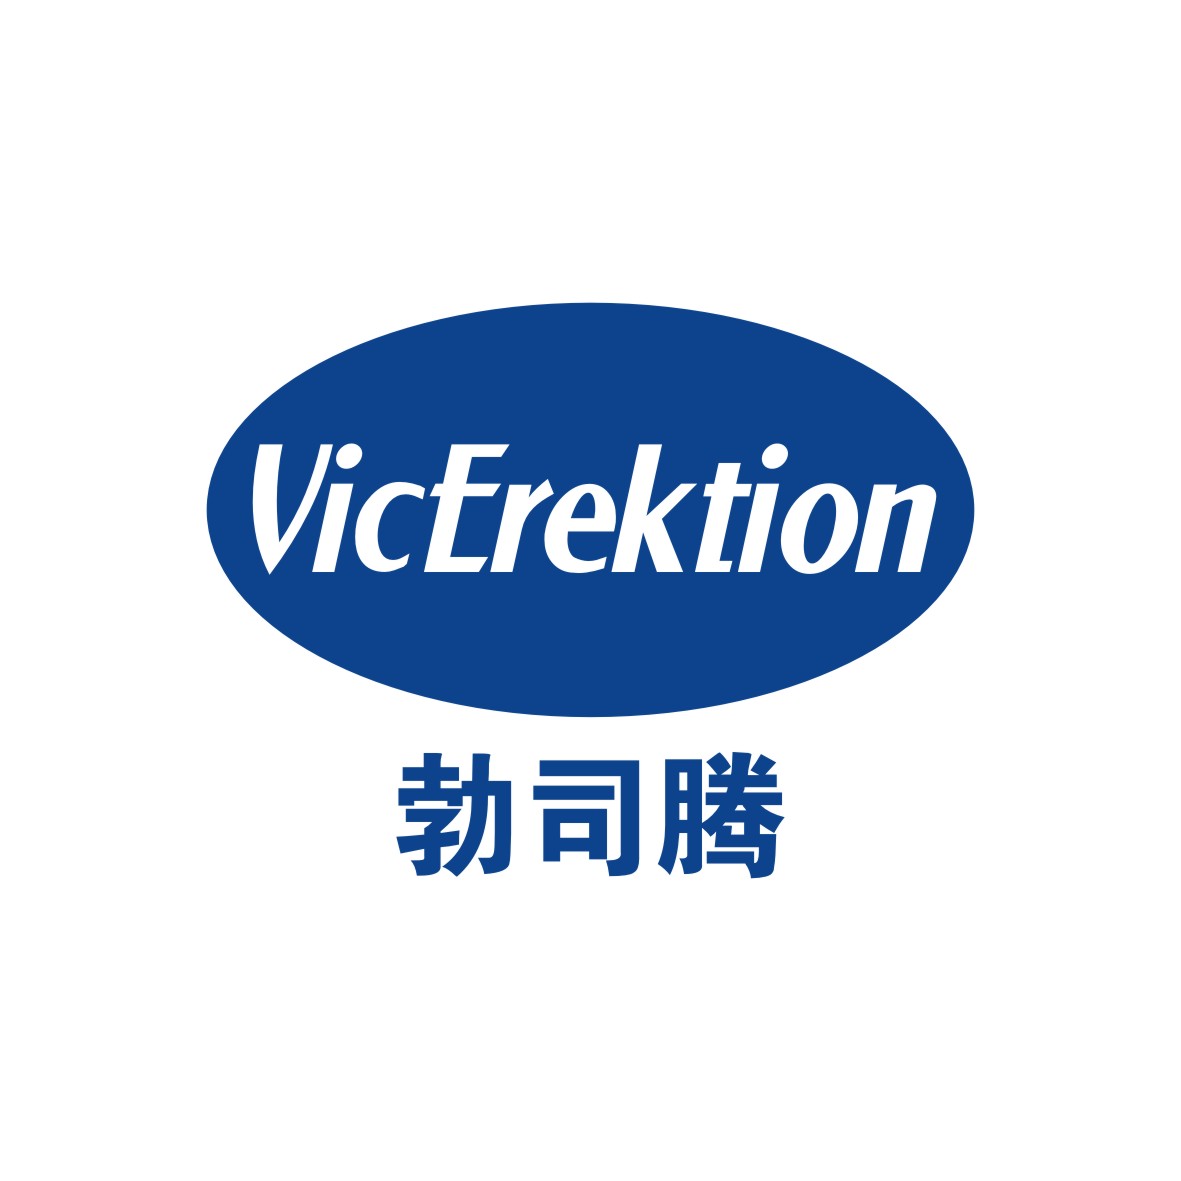 广州品翰文化发展有限公司商标勃司腾 VICEREKTION（05类）多少钱？